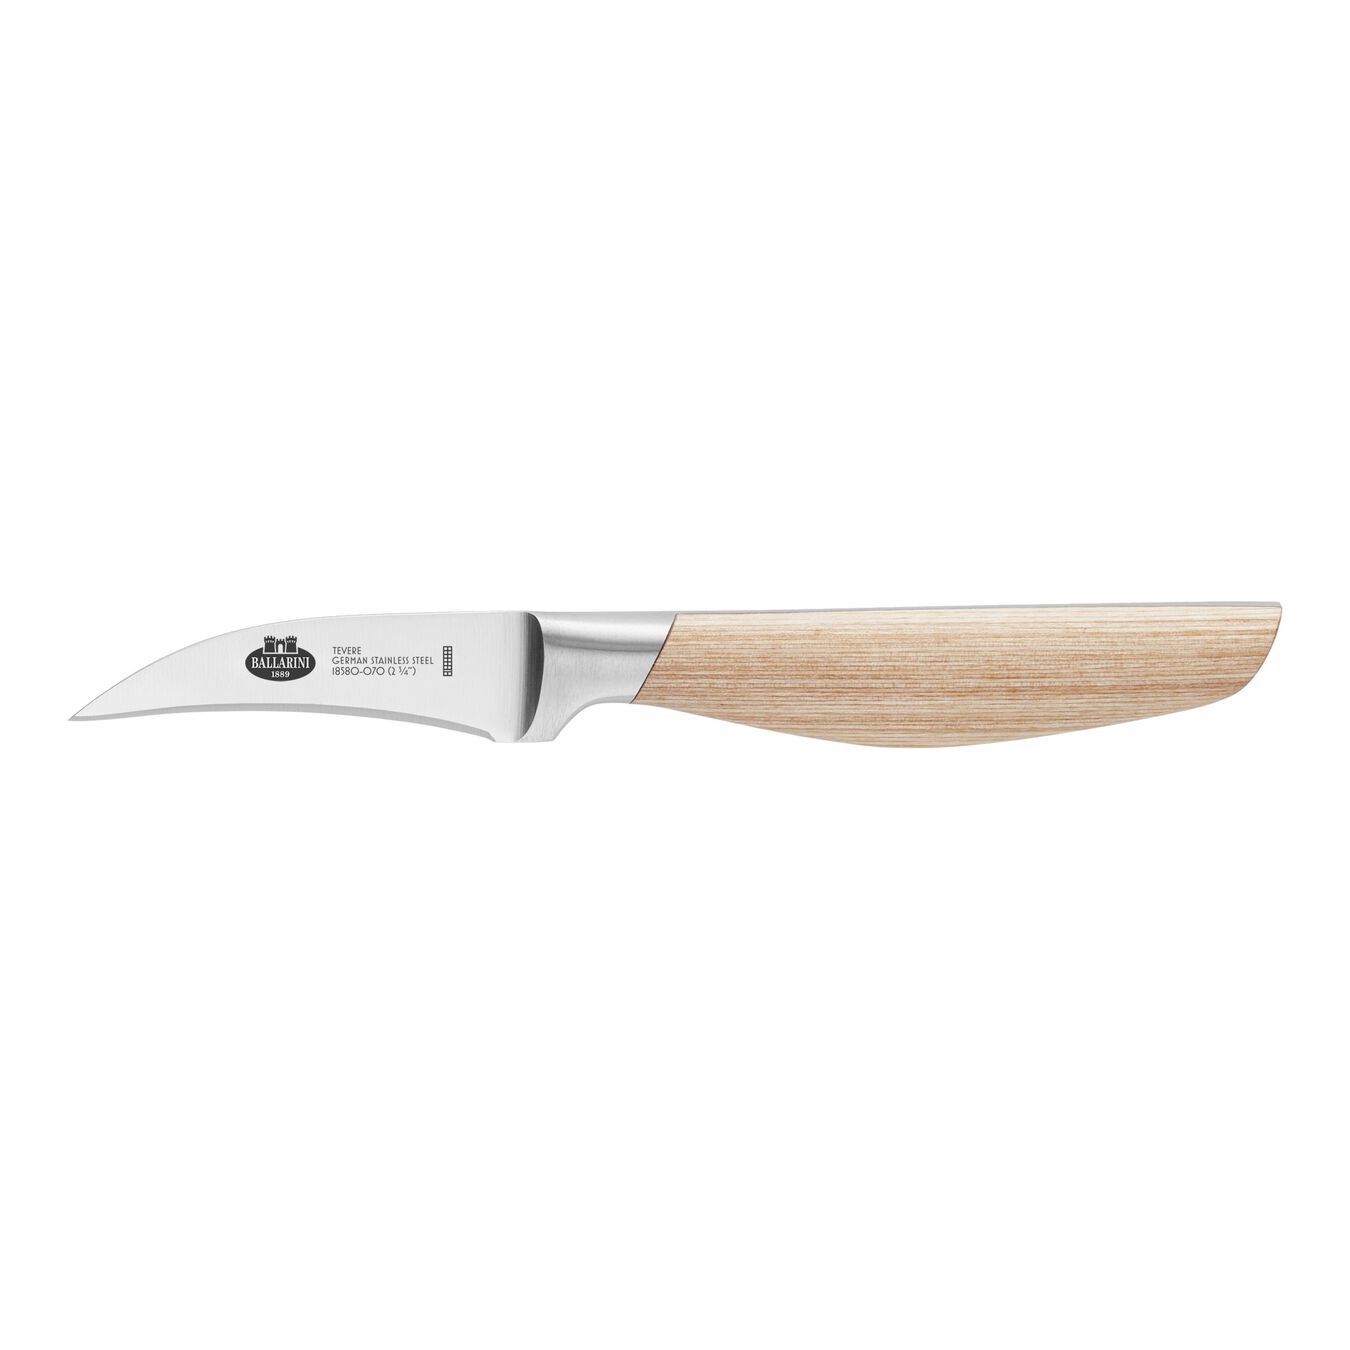 7-pcs natural rubberwood Knife block set,,large 14